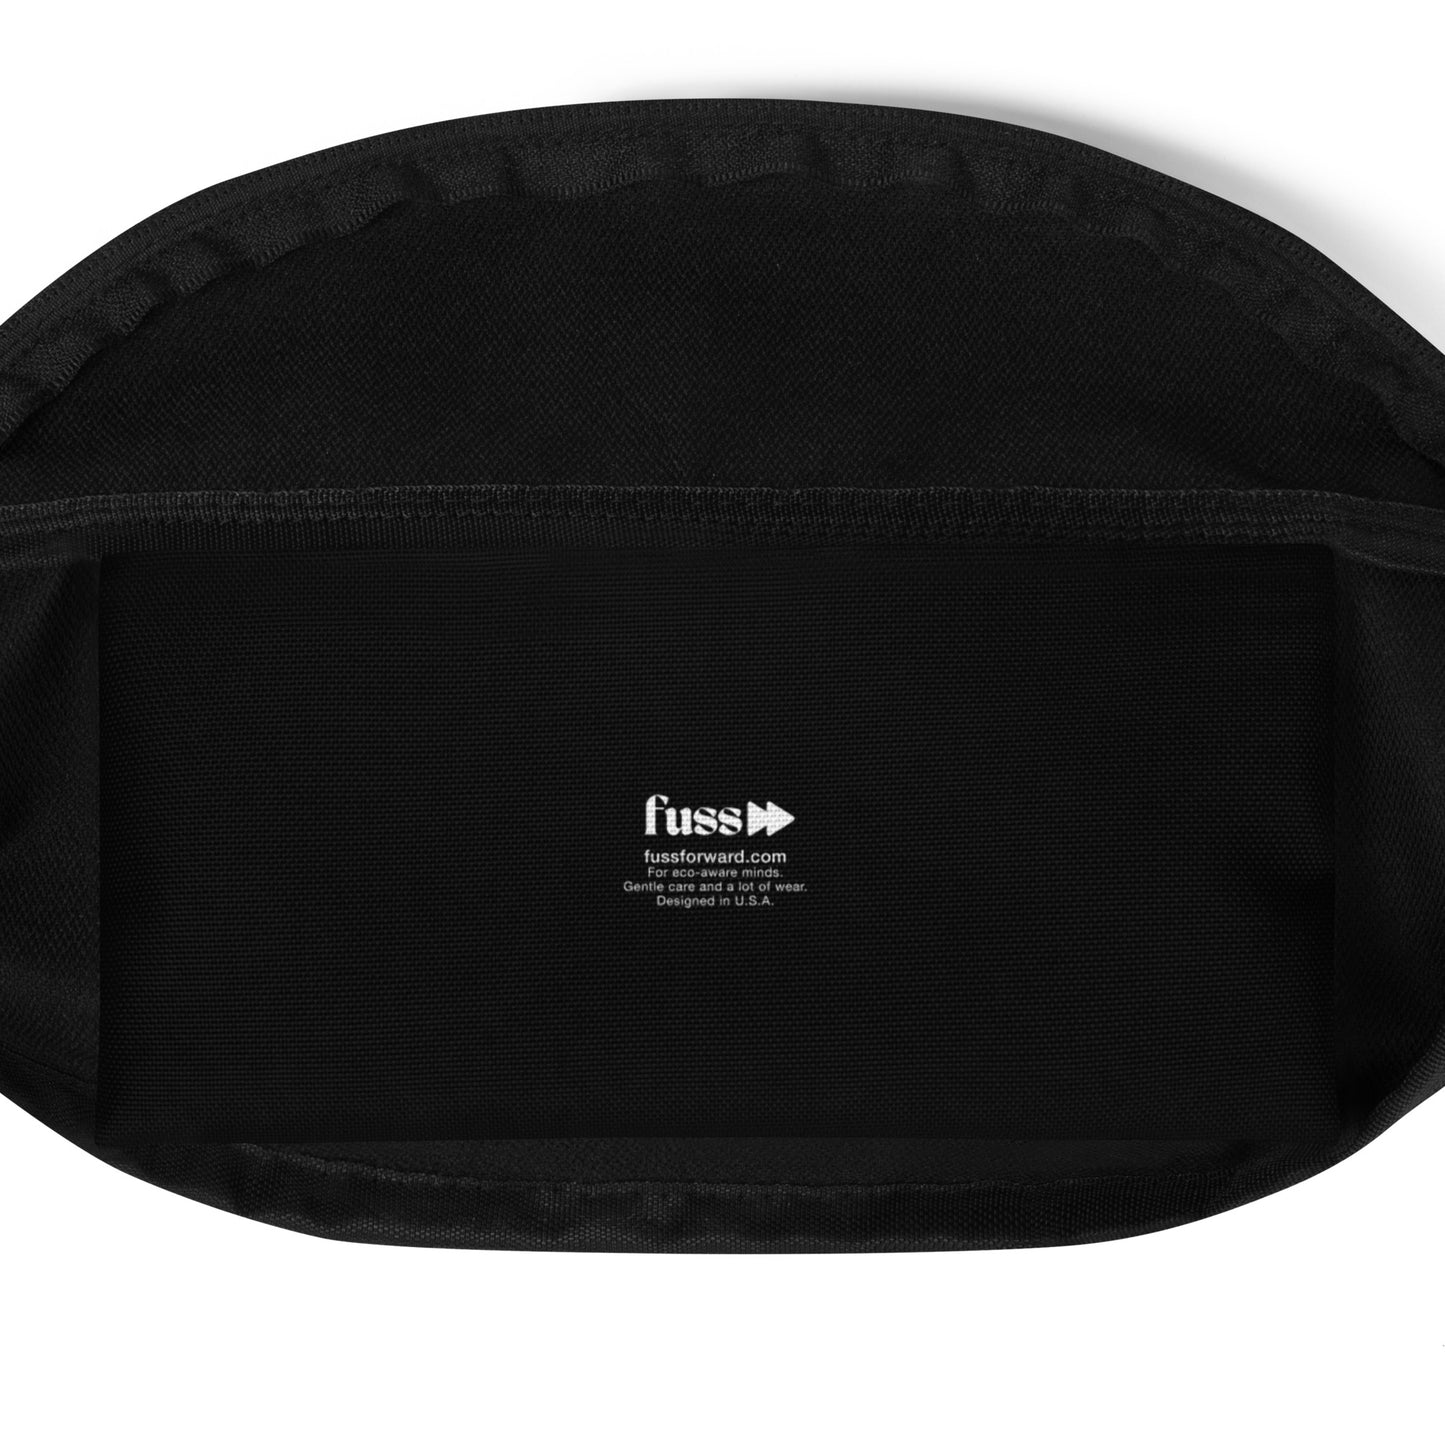 Belt Bag in Black Design